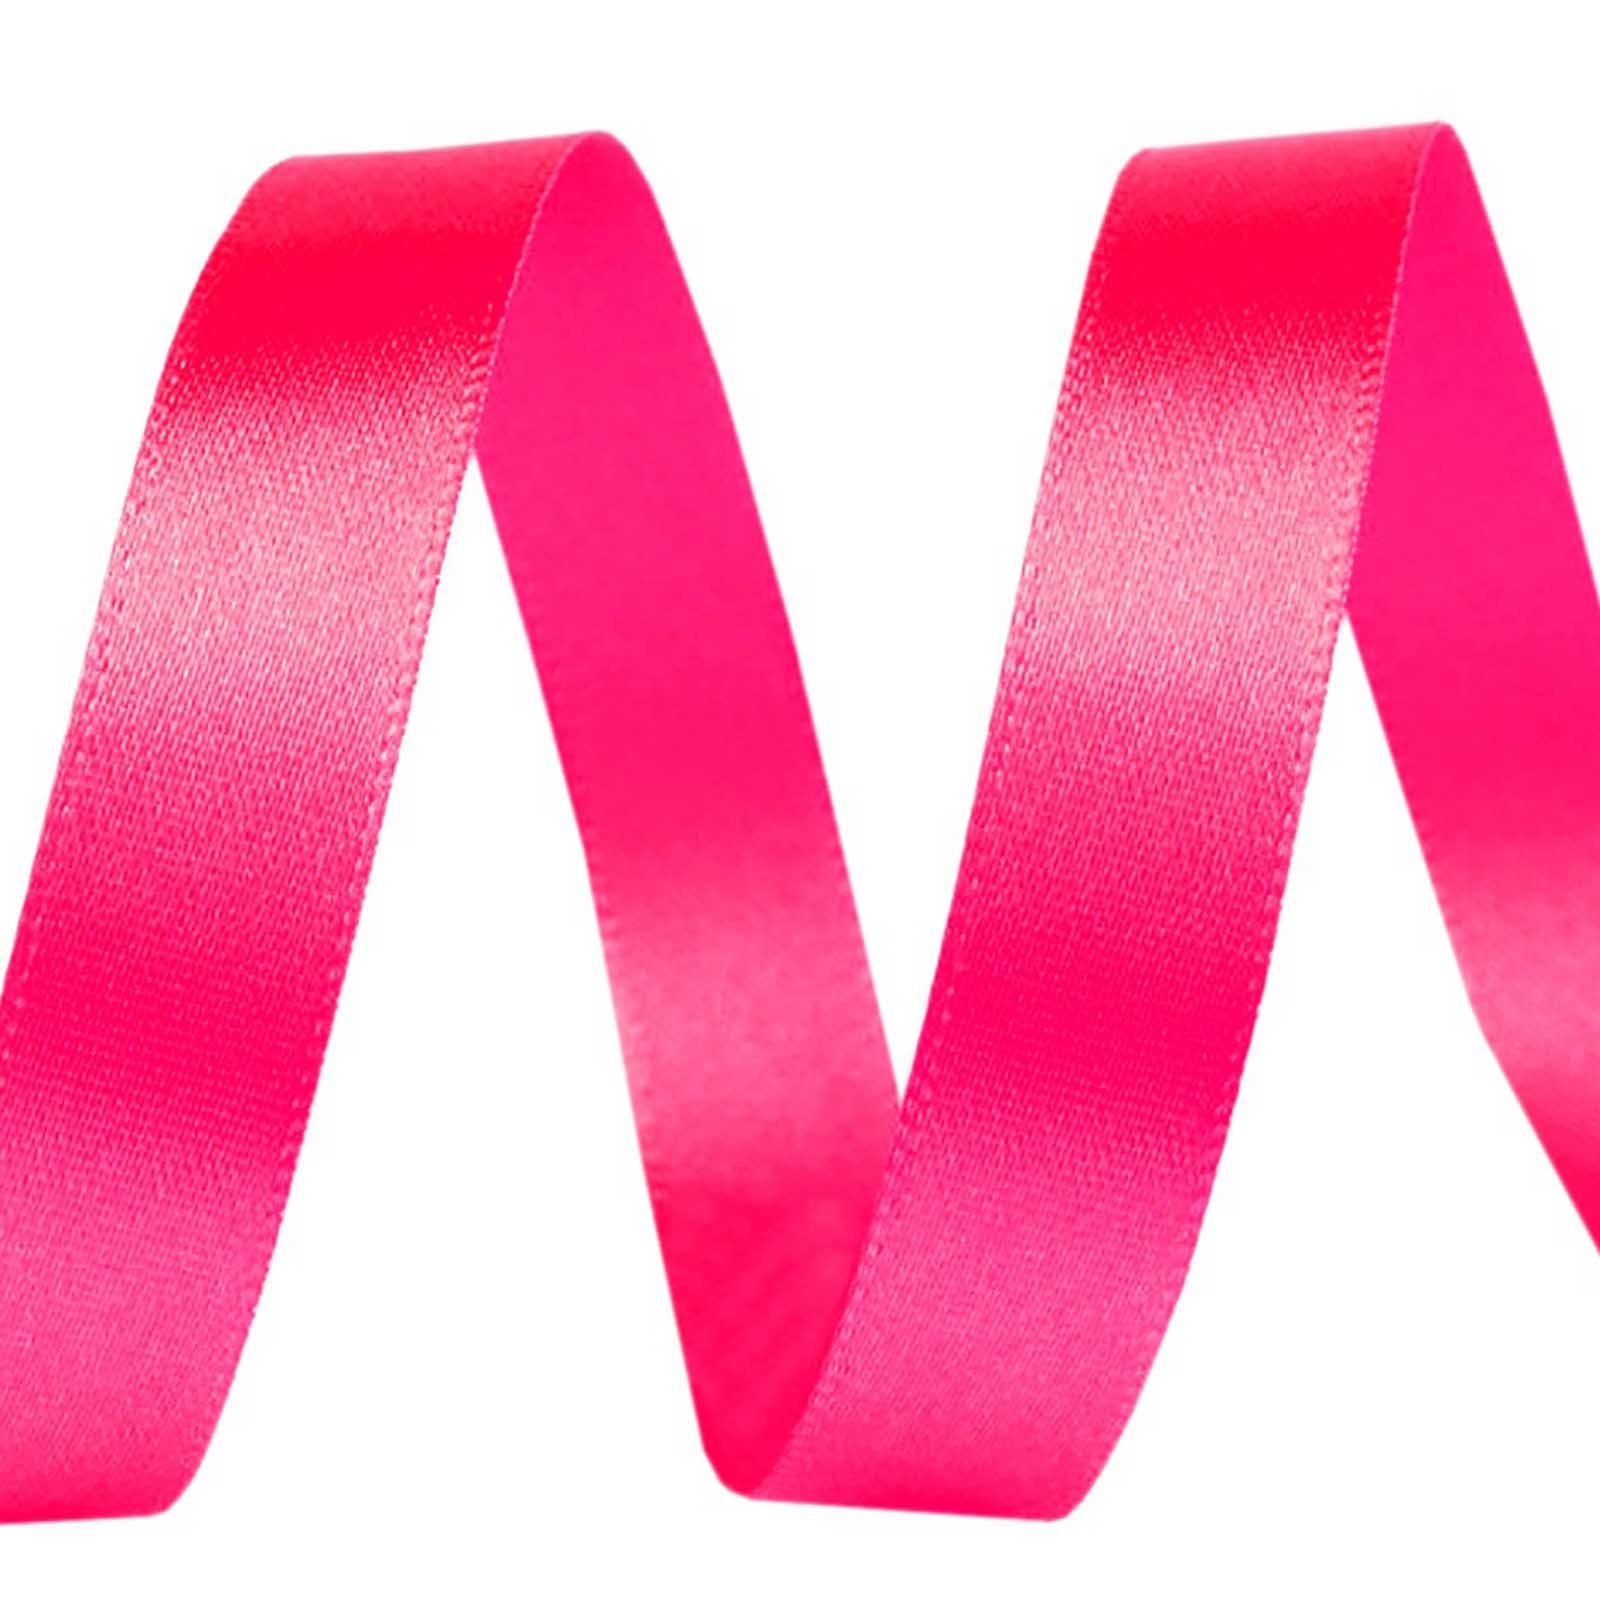 Schmuckband, 5m Geschenkband Satinband 10mm pink maDDma Geschenkband Dekoband